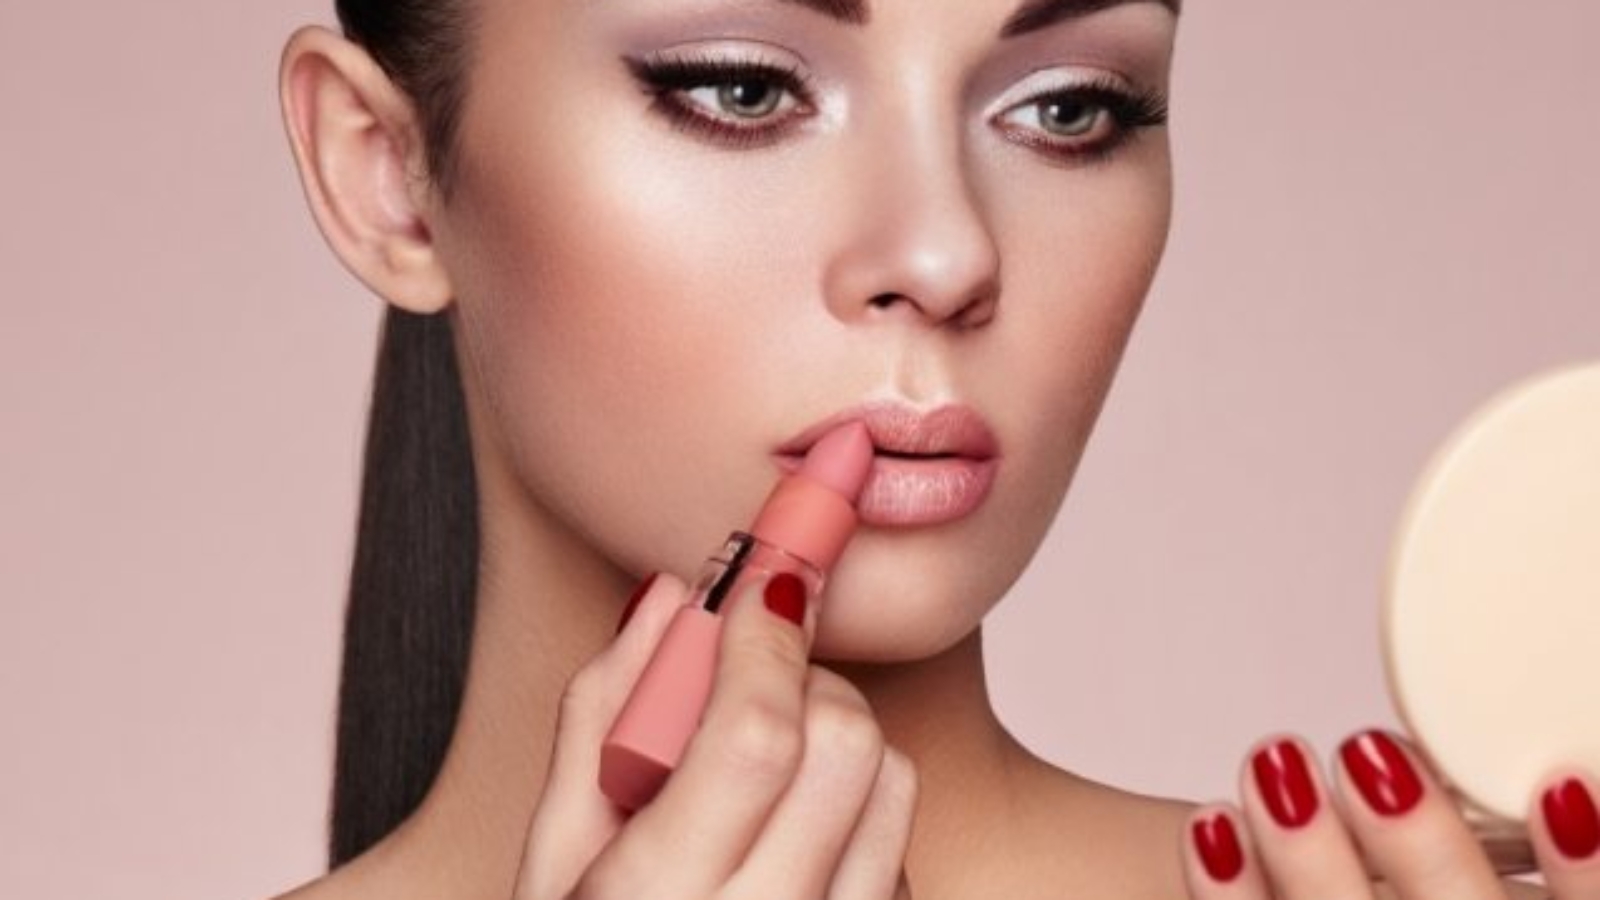 beautiful-woman-paints-lips-with-lipstick-PMB6YWP-1-637x478